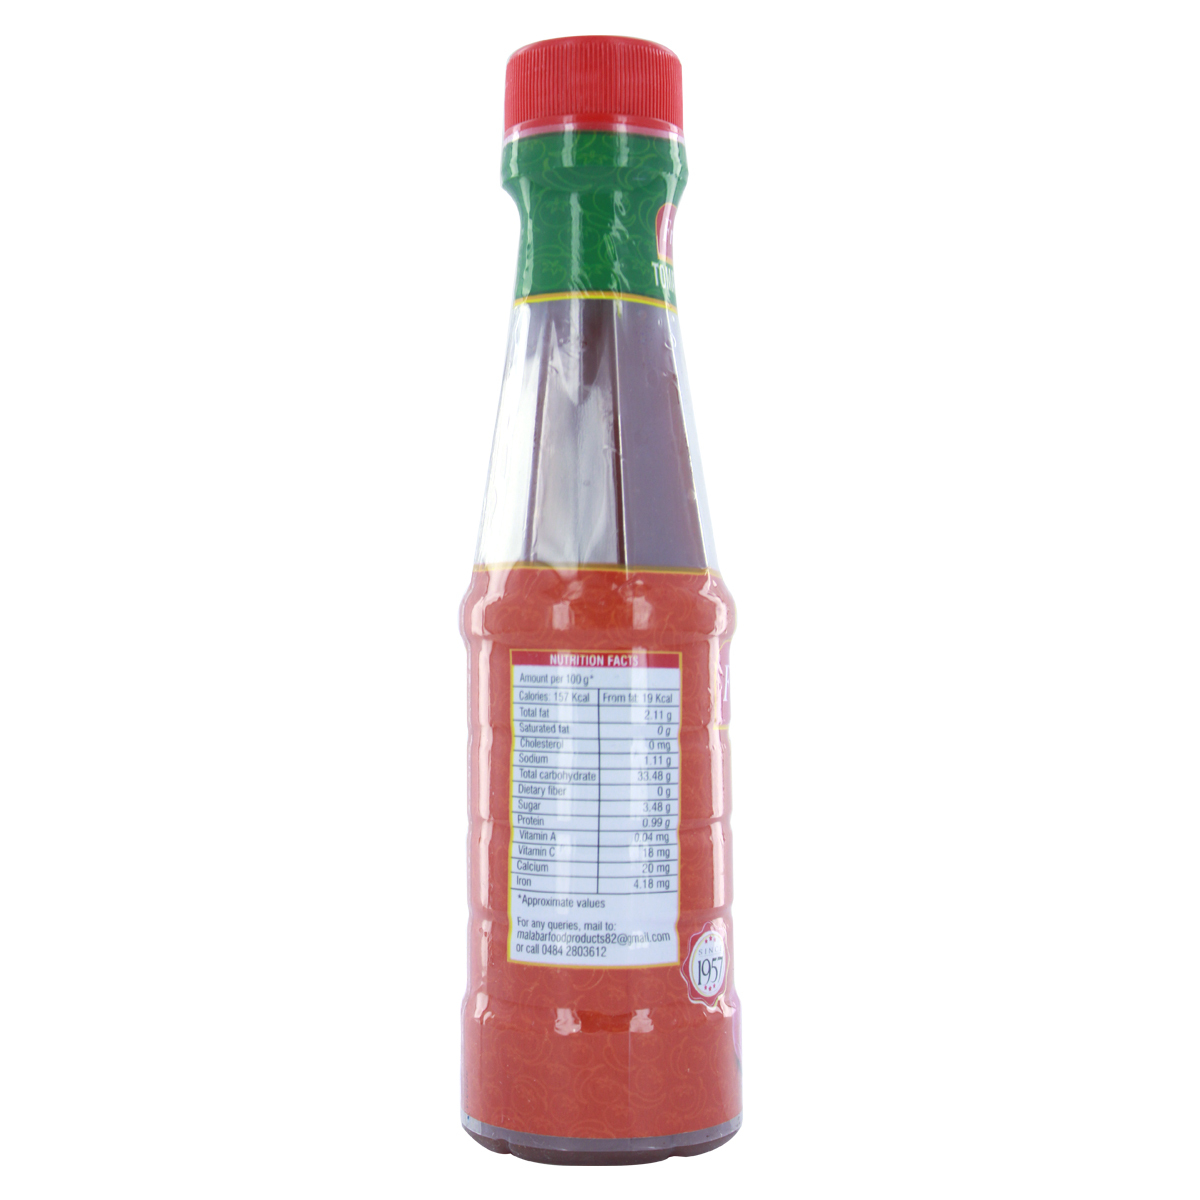 Fruitomans Tomato Chilli Sauce 200g